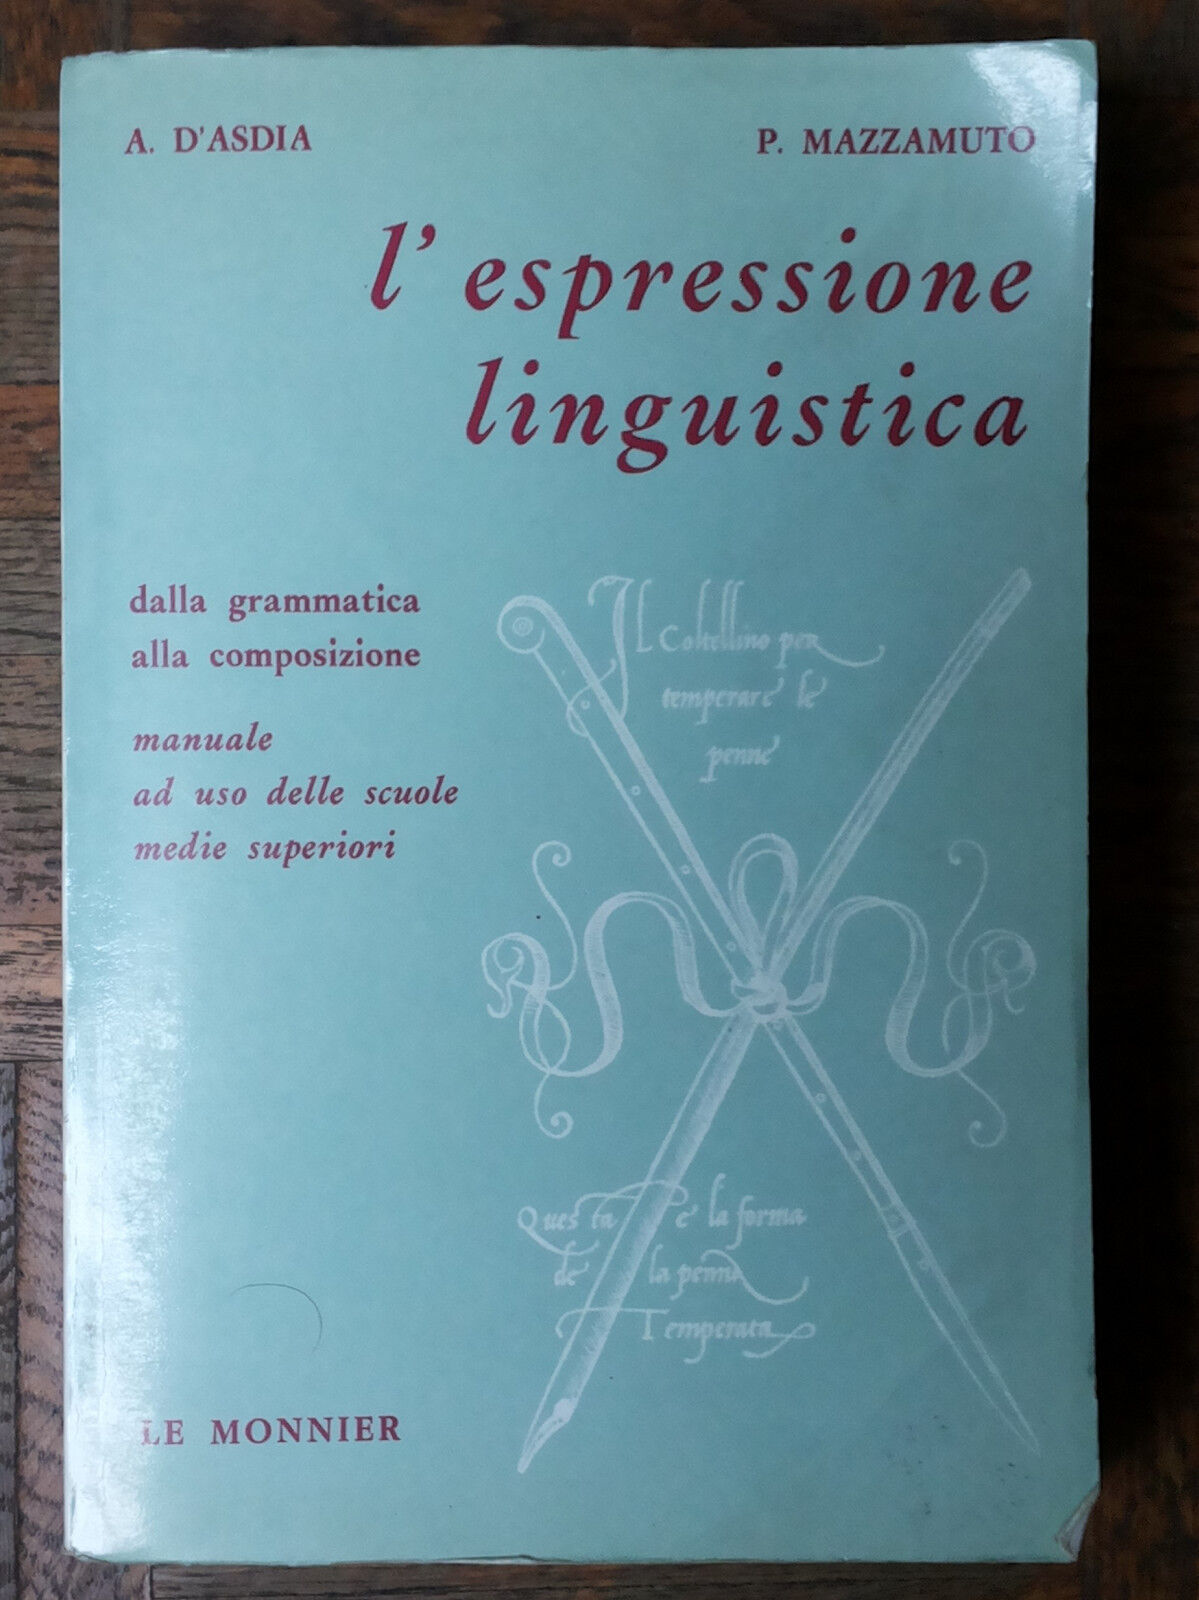 L'espressione linguistica - d'Asdia, Mazzamuto - Le Monnier,1971 - R